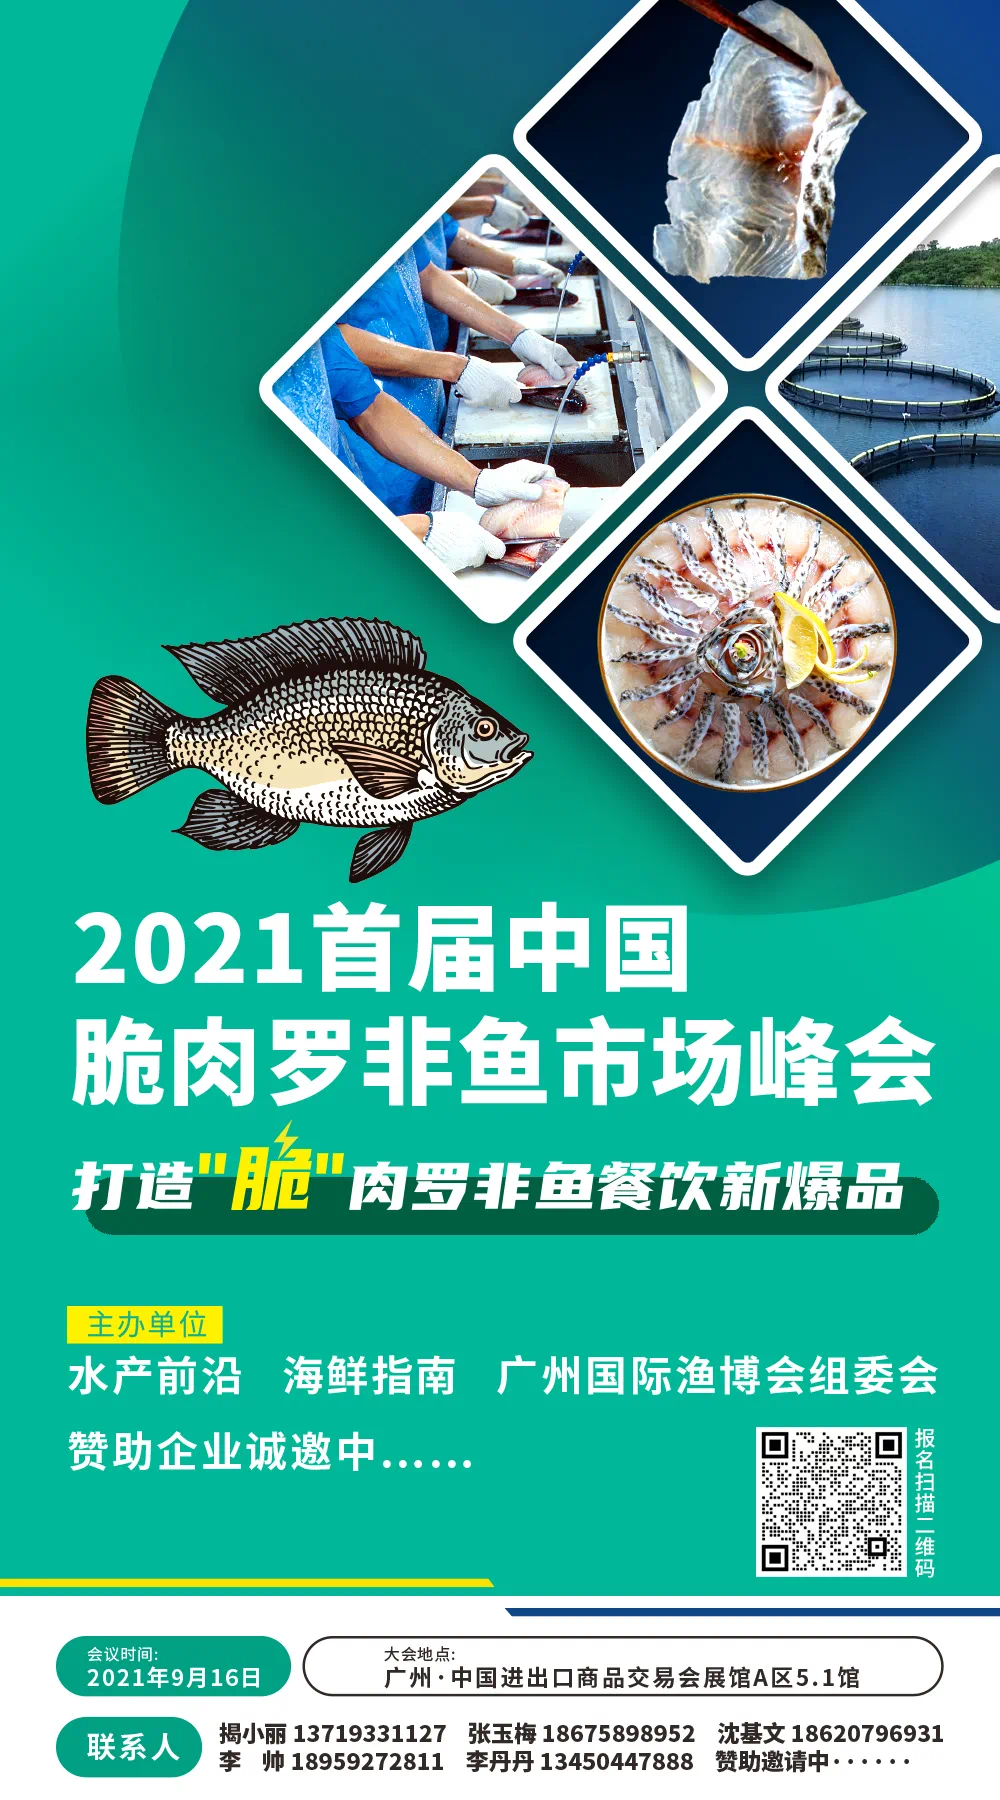 连锁餐饮都在关注的网红鱼！“首届中国脆肉罗非鱼市场峰会”将在广州召开